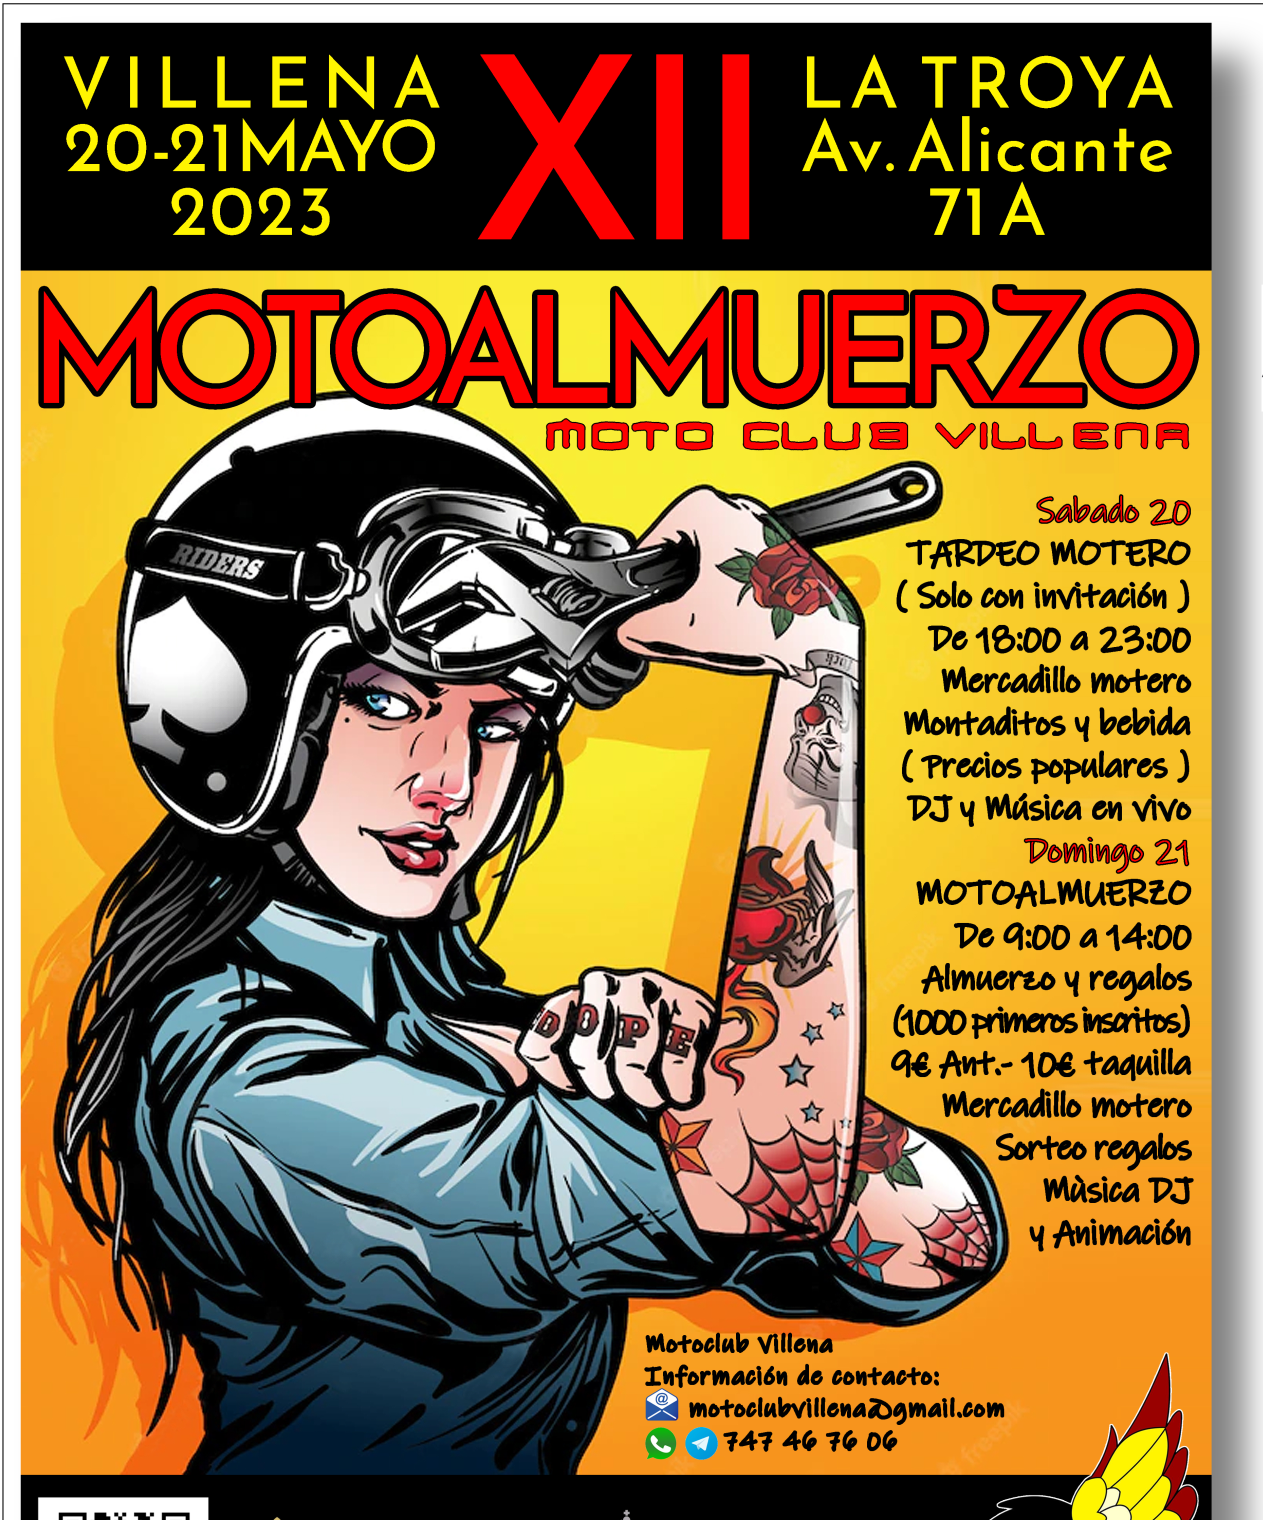 Motoclub Villena organiza su Motoalmuerzo el 20 y 21 de mayo